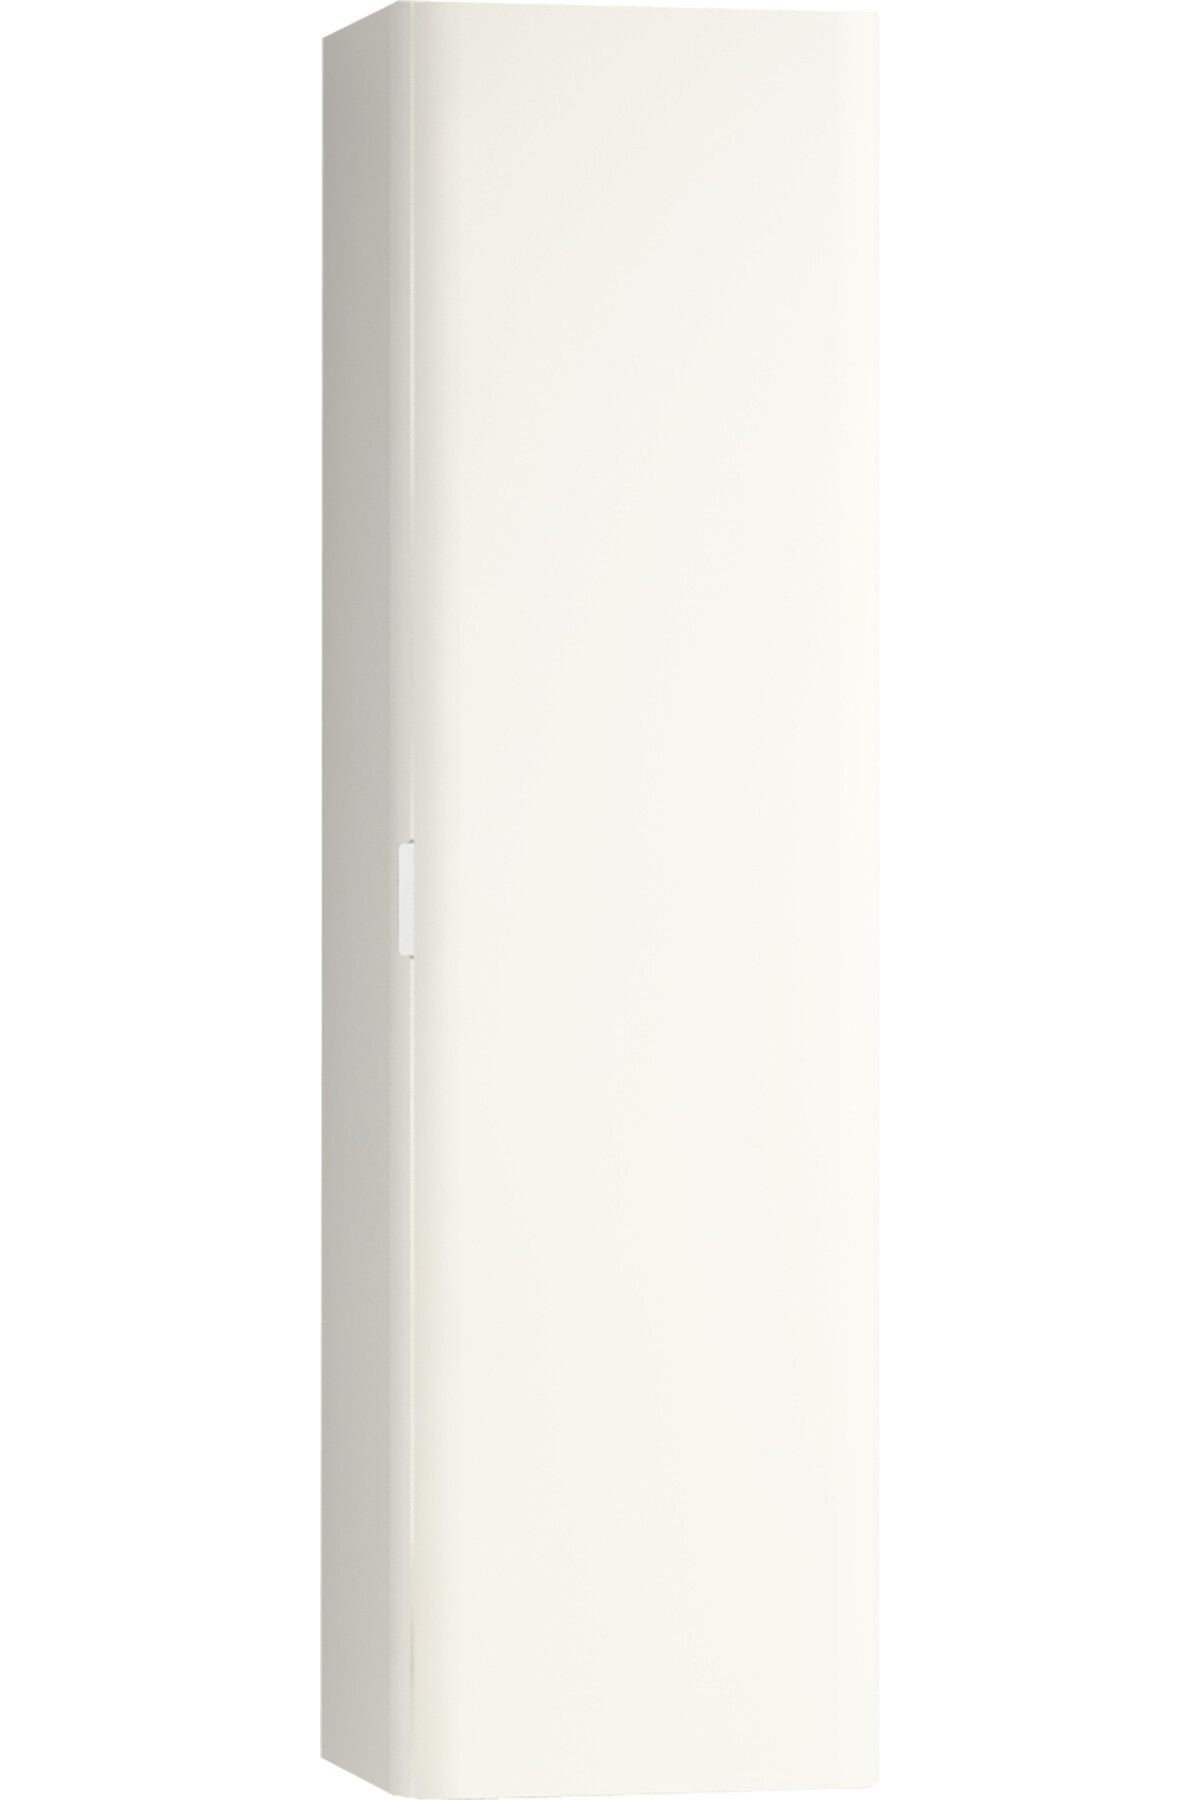 VitrA Nest Trendy 56428 Boy Dolabı, Tek Kapaklı, 45 Cm, Parlak Beyaz / Sağ